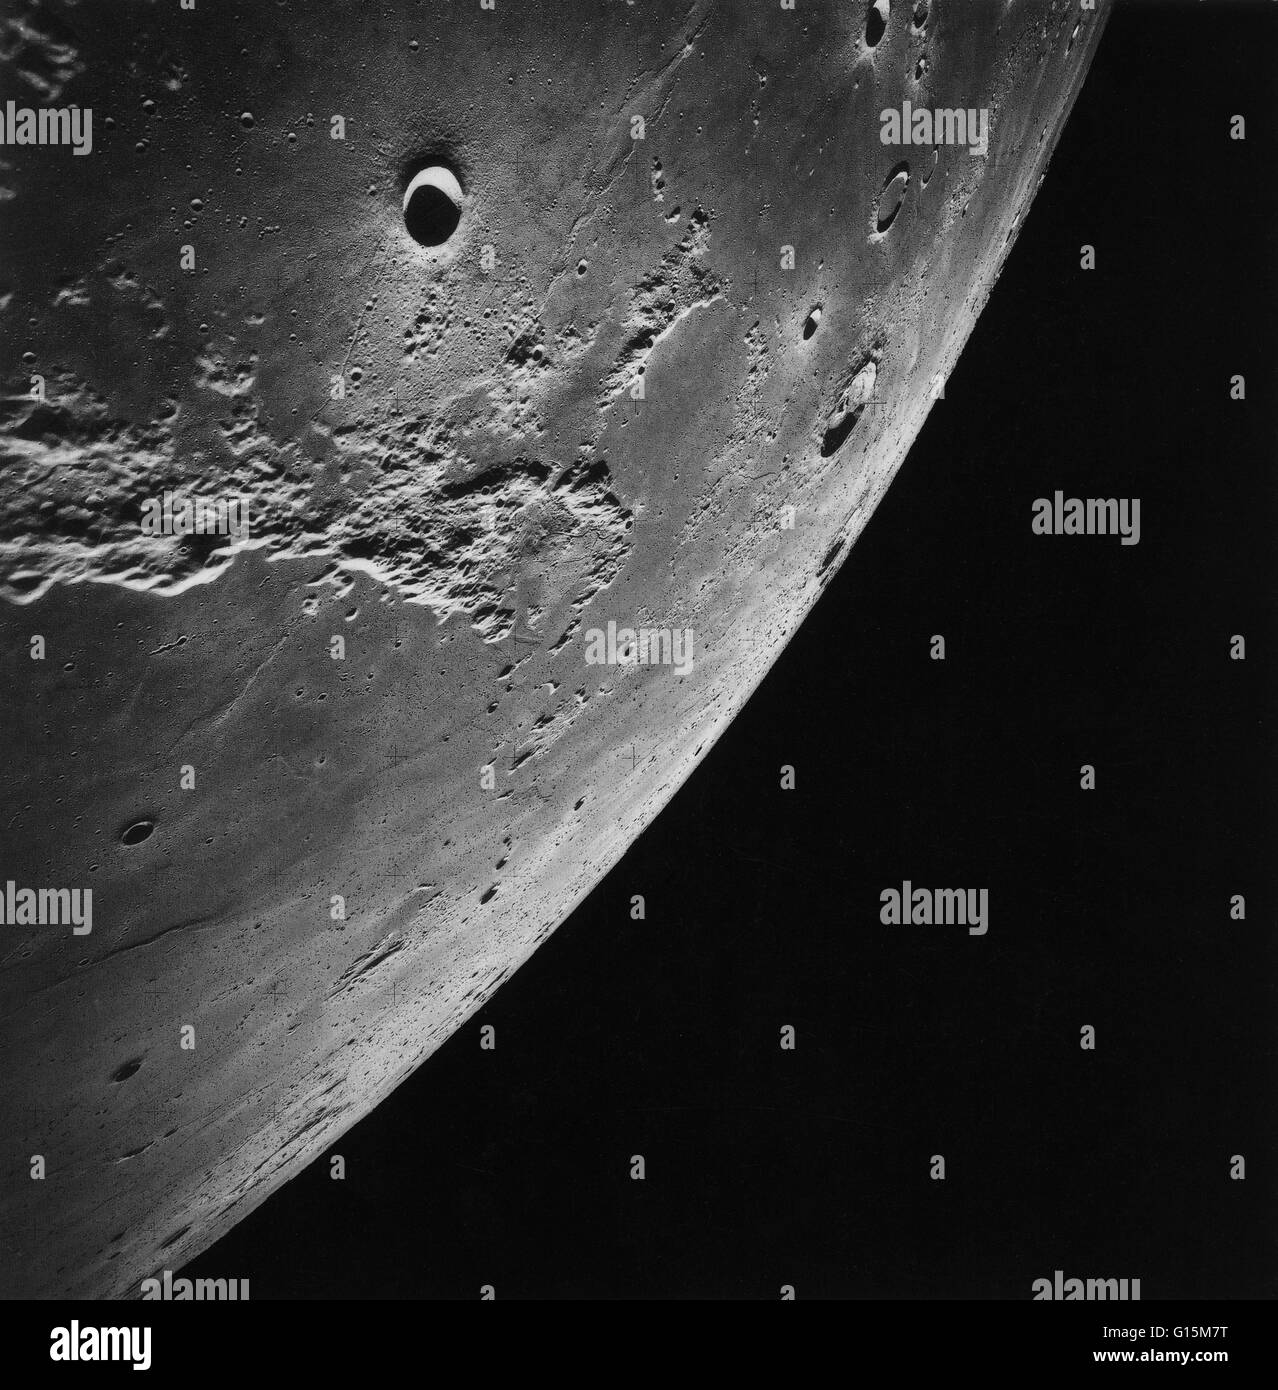 La lune photographiée par l'astronaute Kenneth Mattingly de la mission Apollo 16, avril 1972. Banque D'Images